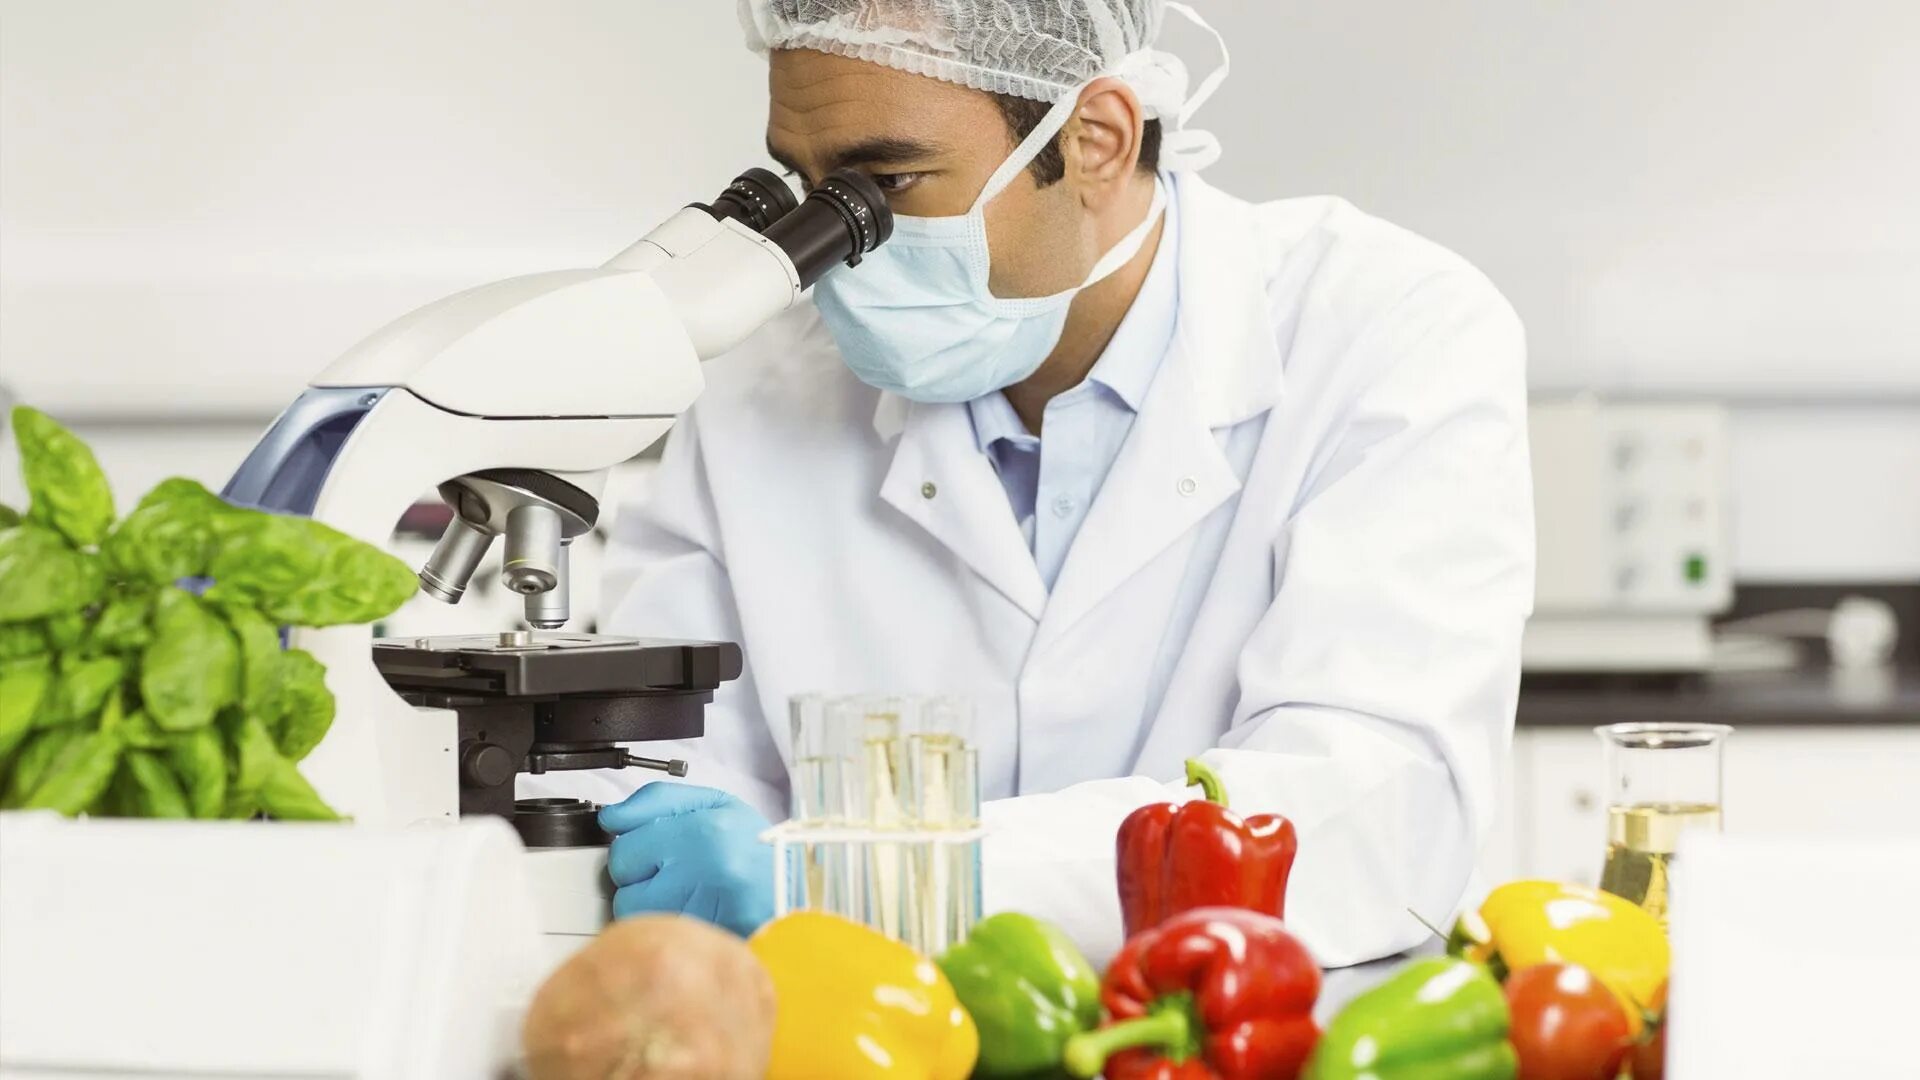 Овощи в лаборатории. Исследование пищевых продуктов. Контроль качества пищевых продуктов. Лабораторные исследования продуктов.